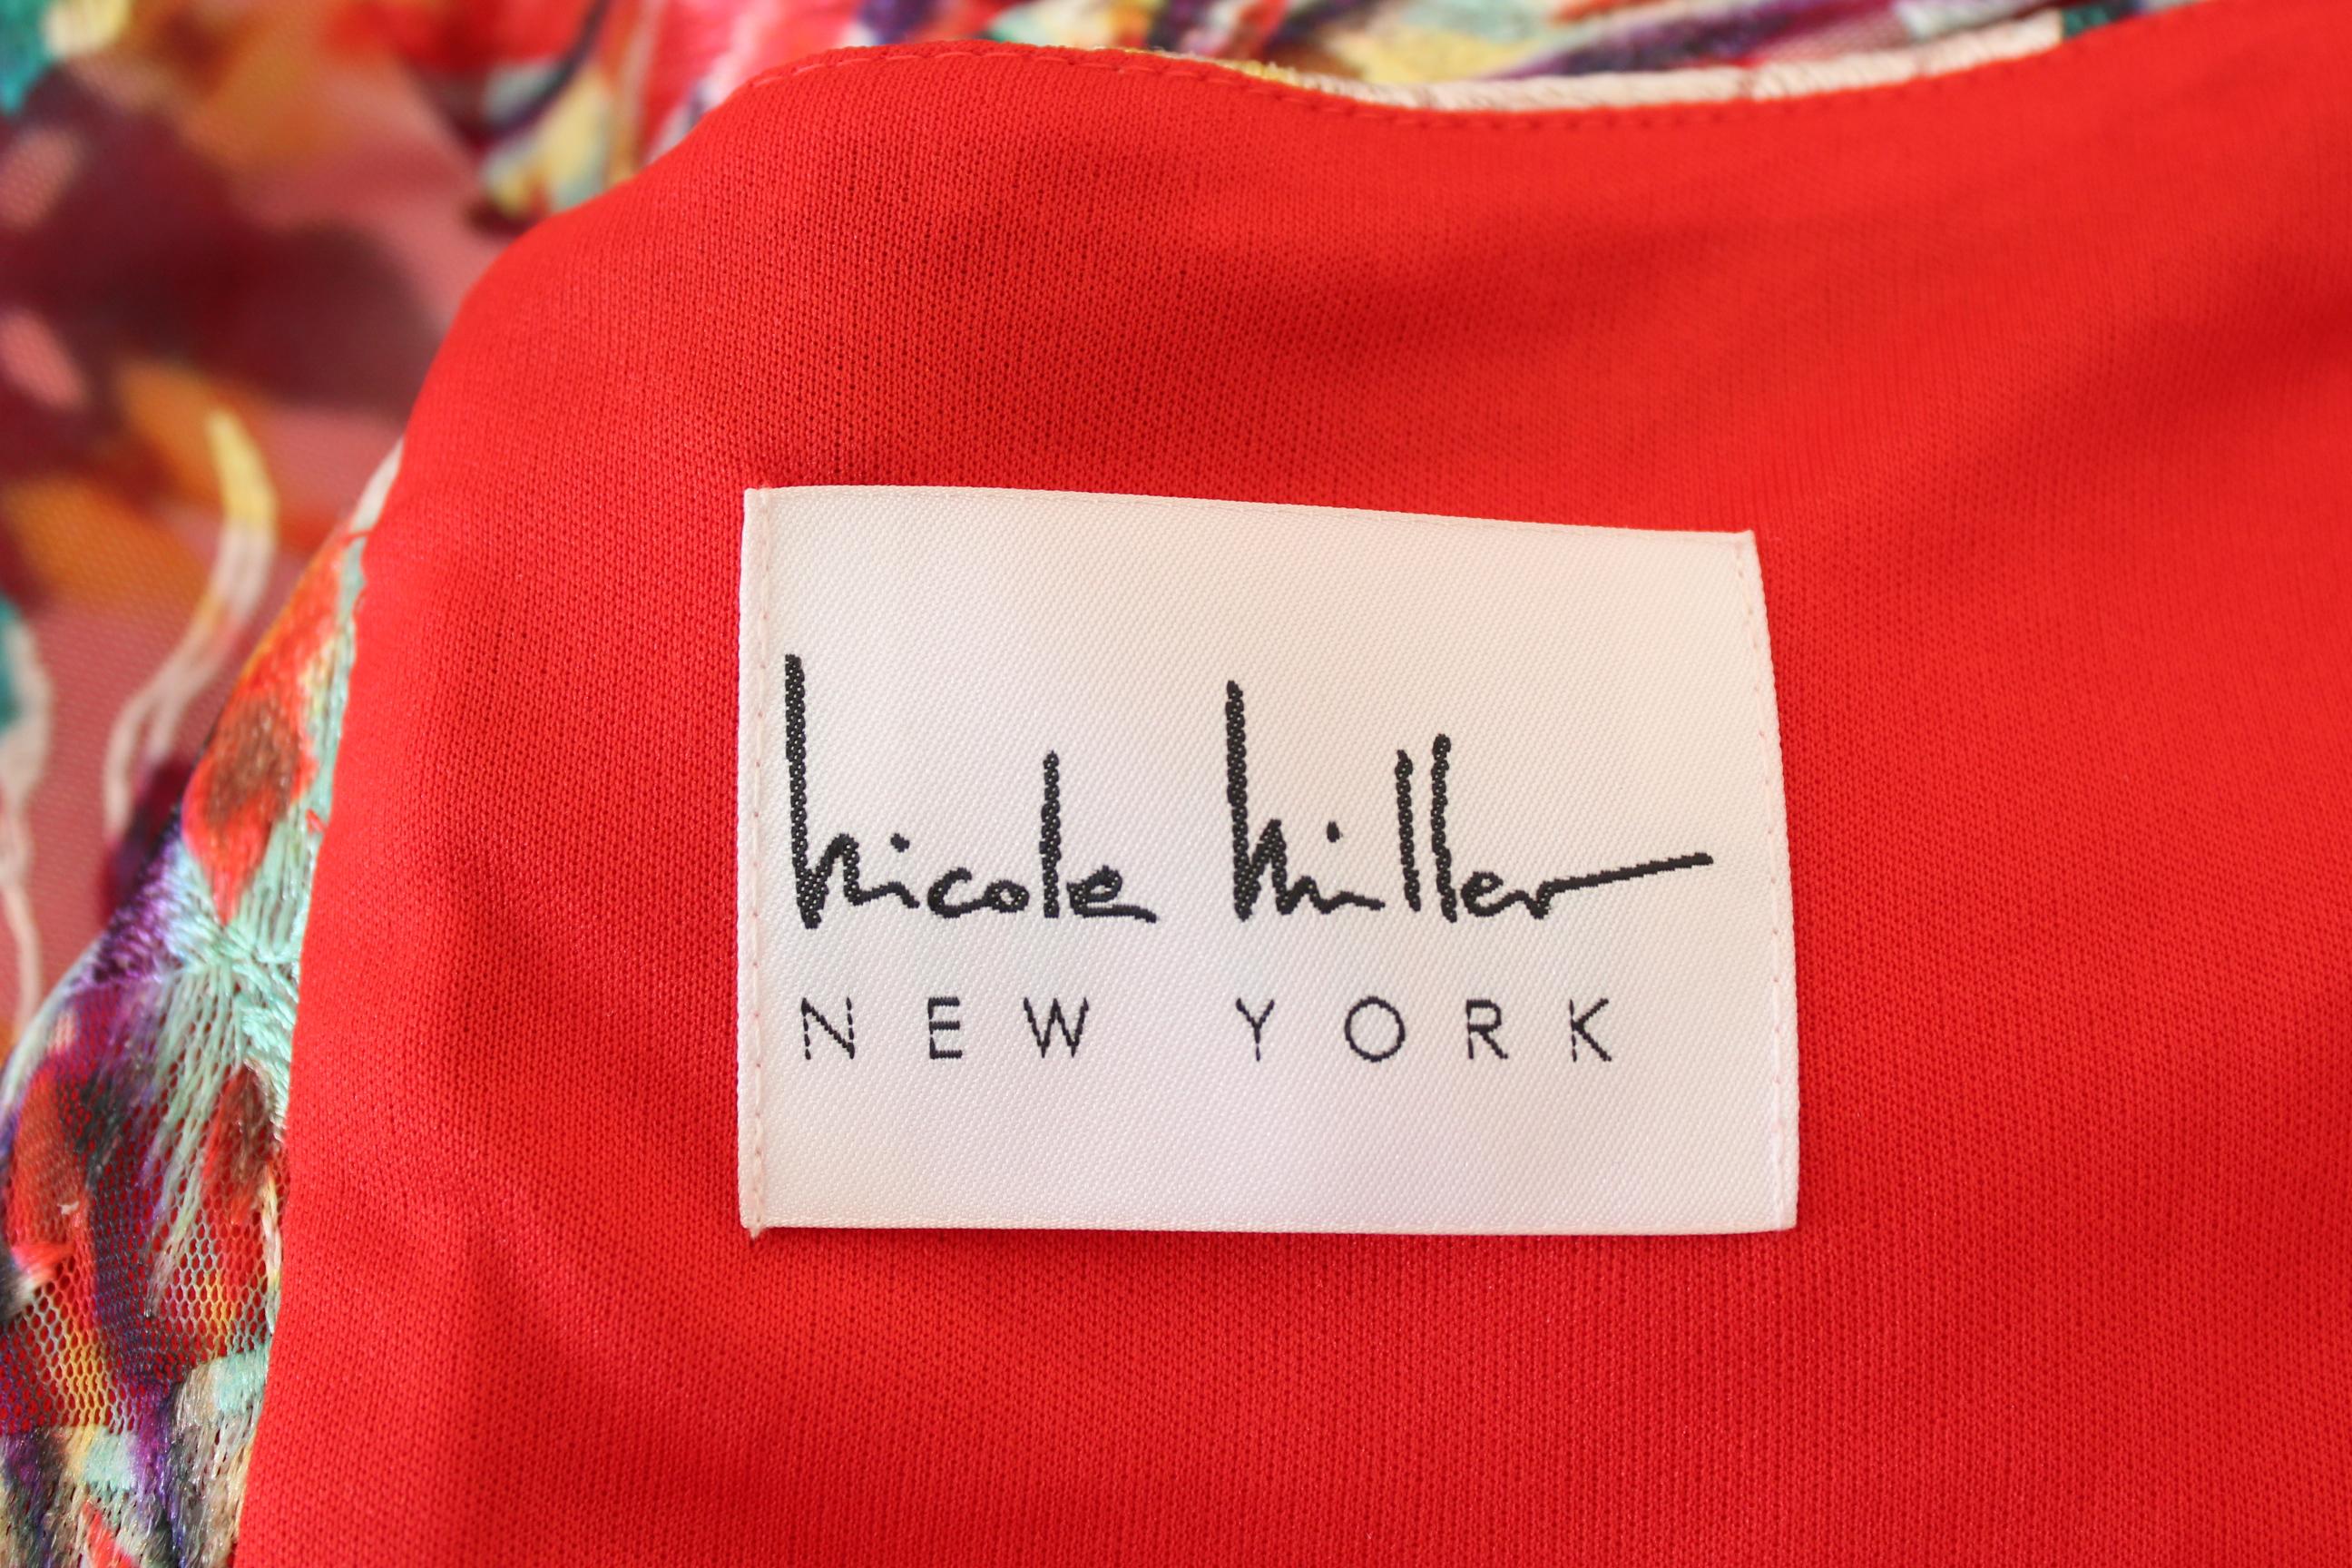 Nicole Miller Transparent Mesh Red Cocktail Short Floral Dress   2